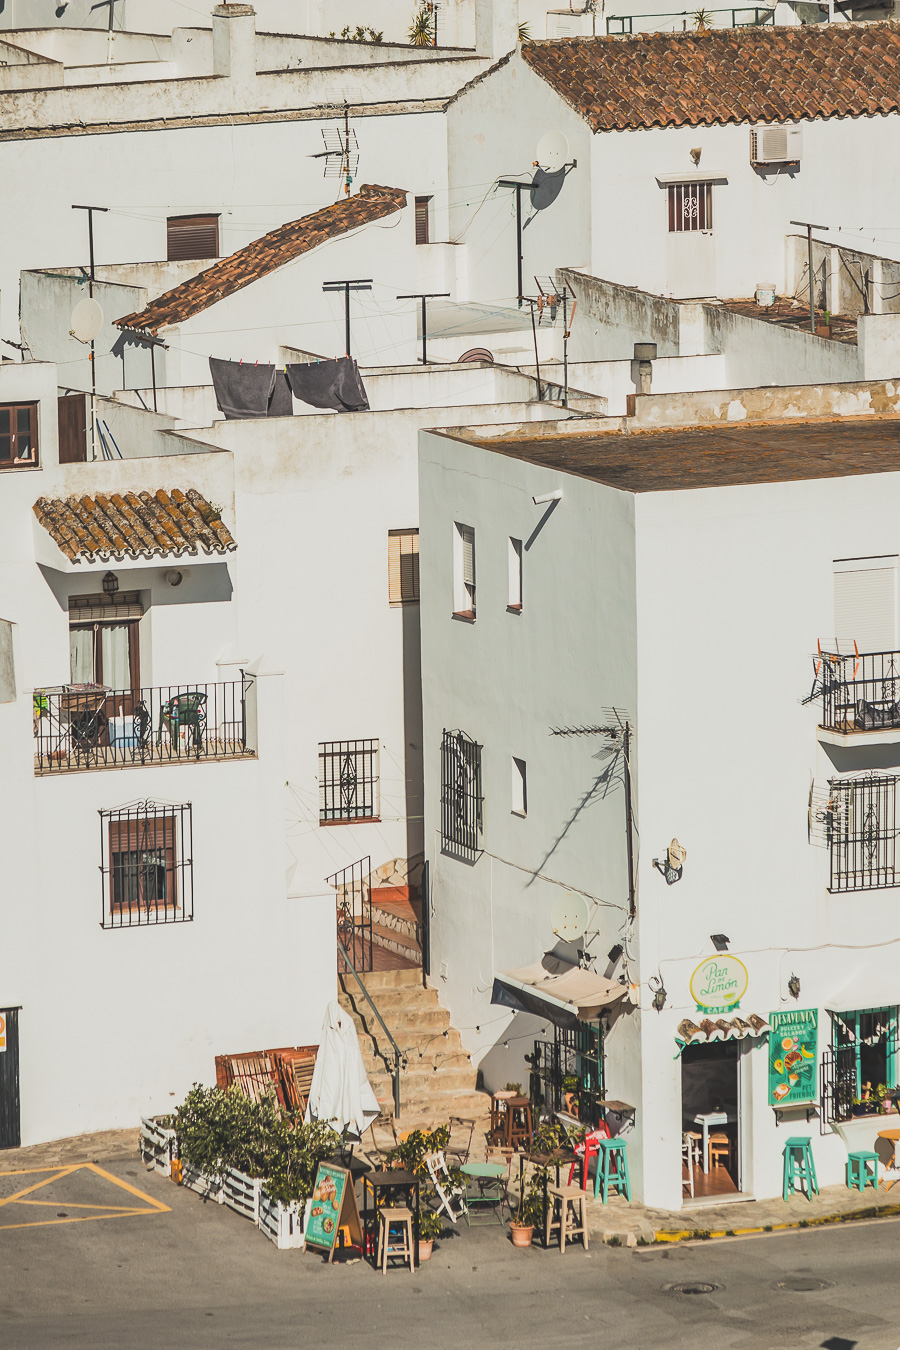 Découvrez nos conseils pour la location d'un van en Andalousie! 🌞 Explorez les paysages époustouflants de l'Andalousie lors d'un road trip inoubliable. Que vous soyez en couple, en famille ou entre amis, profitez de nos astuces pour un voyage sans souci. Cliquez pour tout savoir sur le voyage en van, les meilleures routes, et les destinations à ne pas manquer. 🌍🚐 #VoyageEnVan #RoadTripEnVan #AndalousieEspagne #NatureEspagne #VacancesEspagne #RoadTripEurope #DestinationsDeVoyages